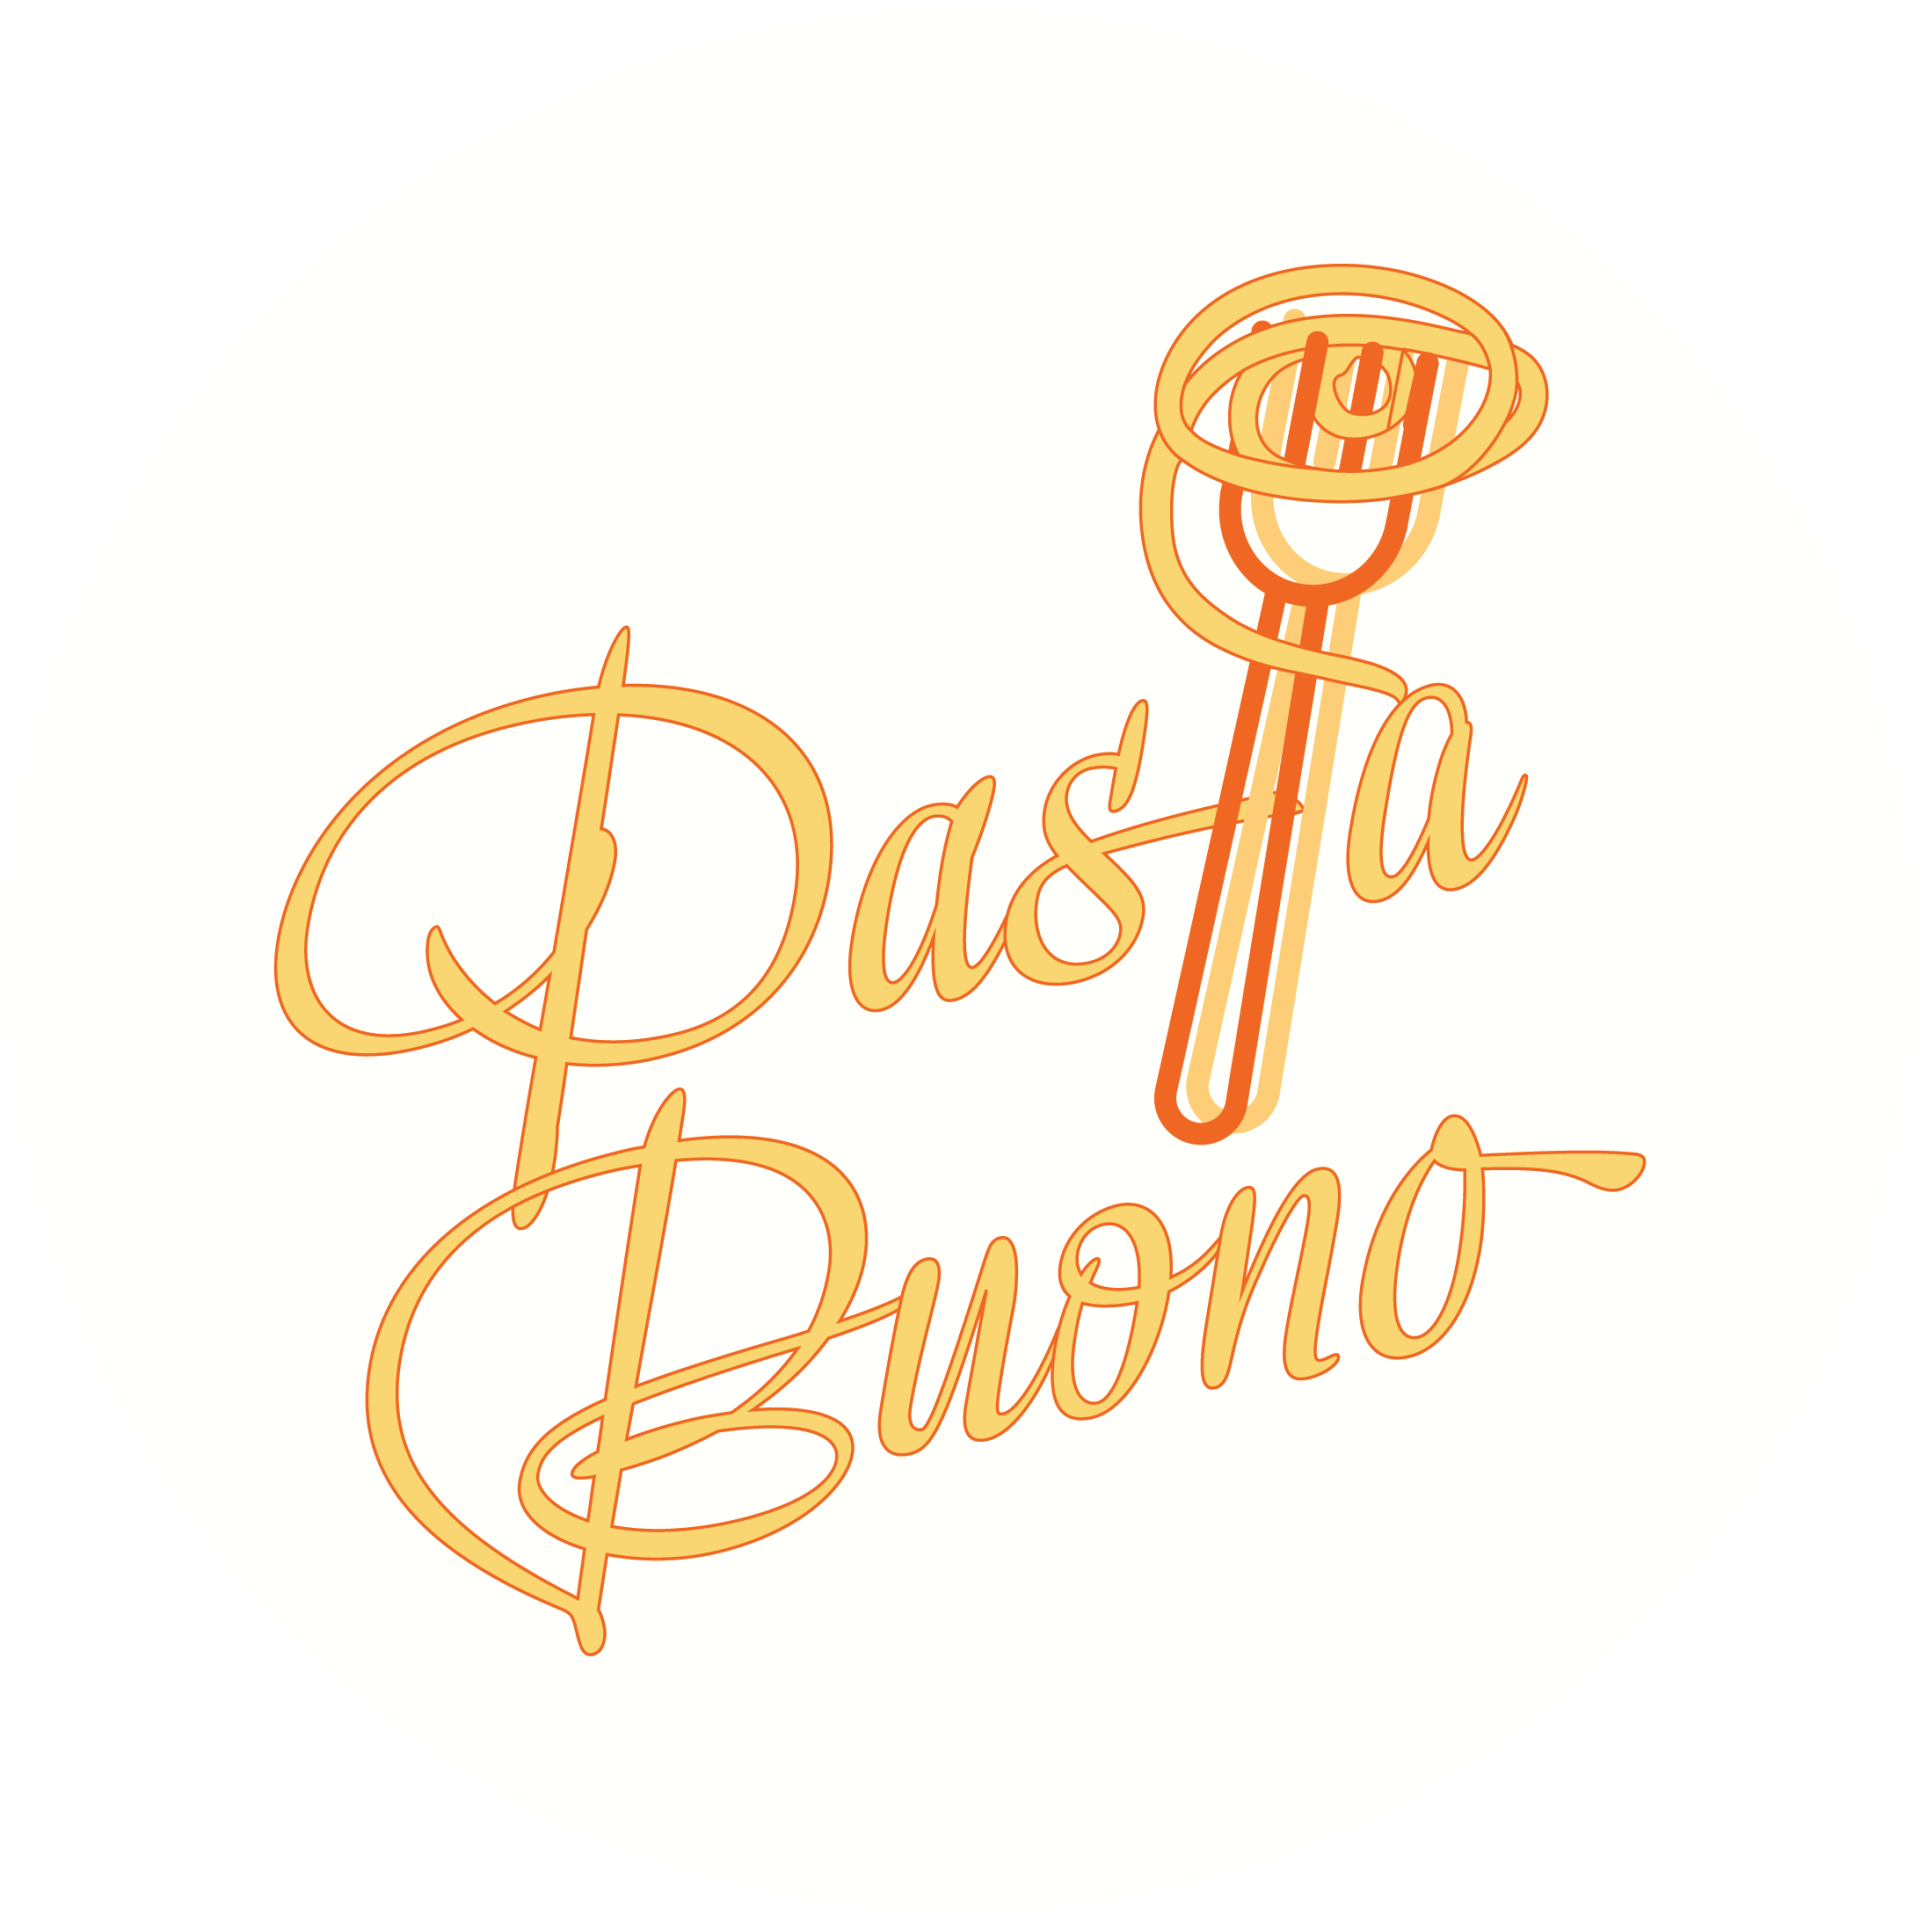 Pasta Buono logo